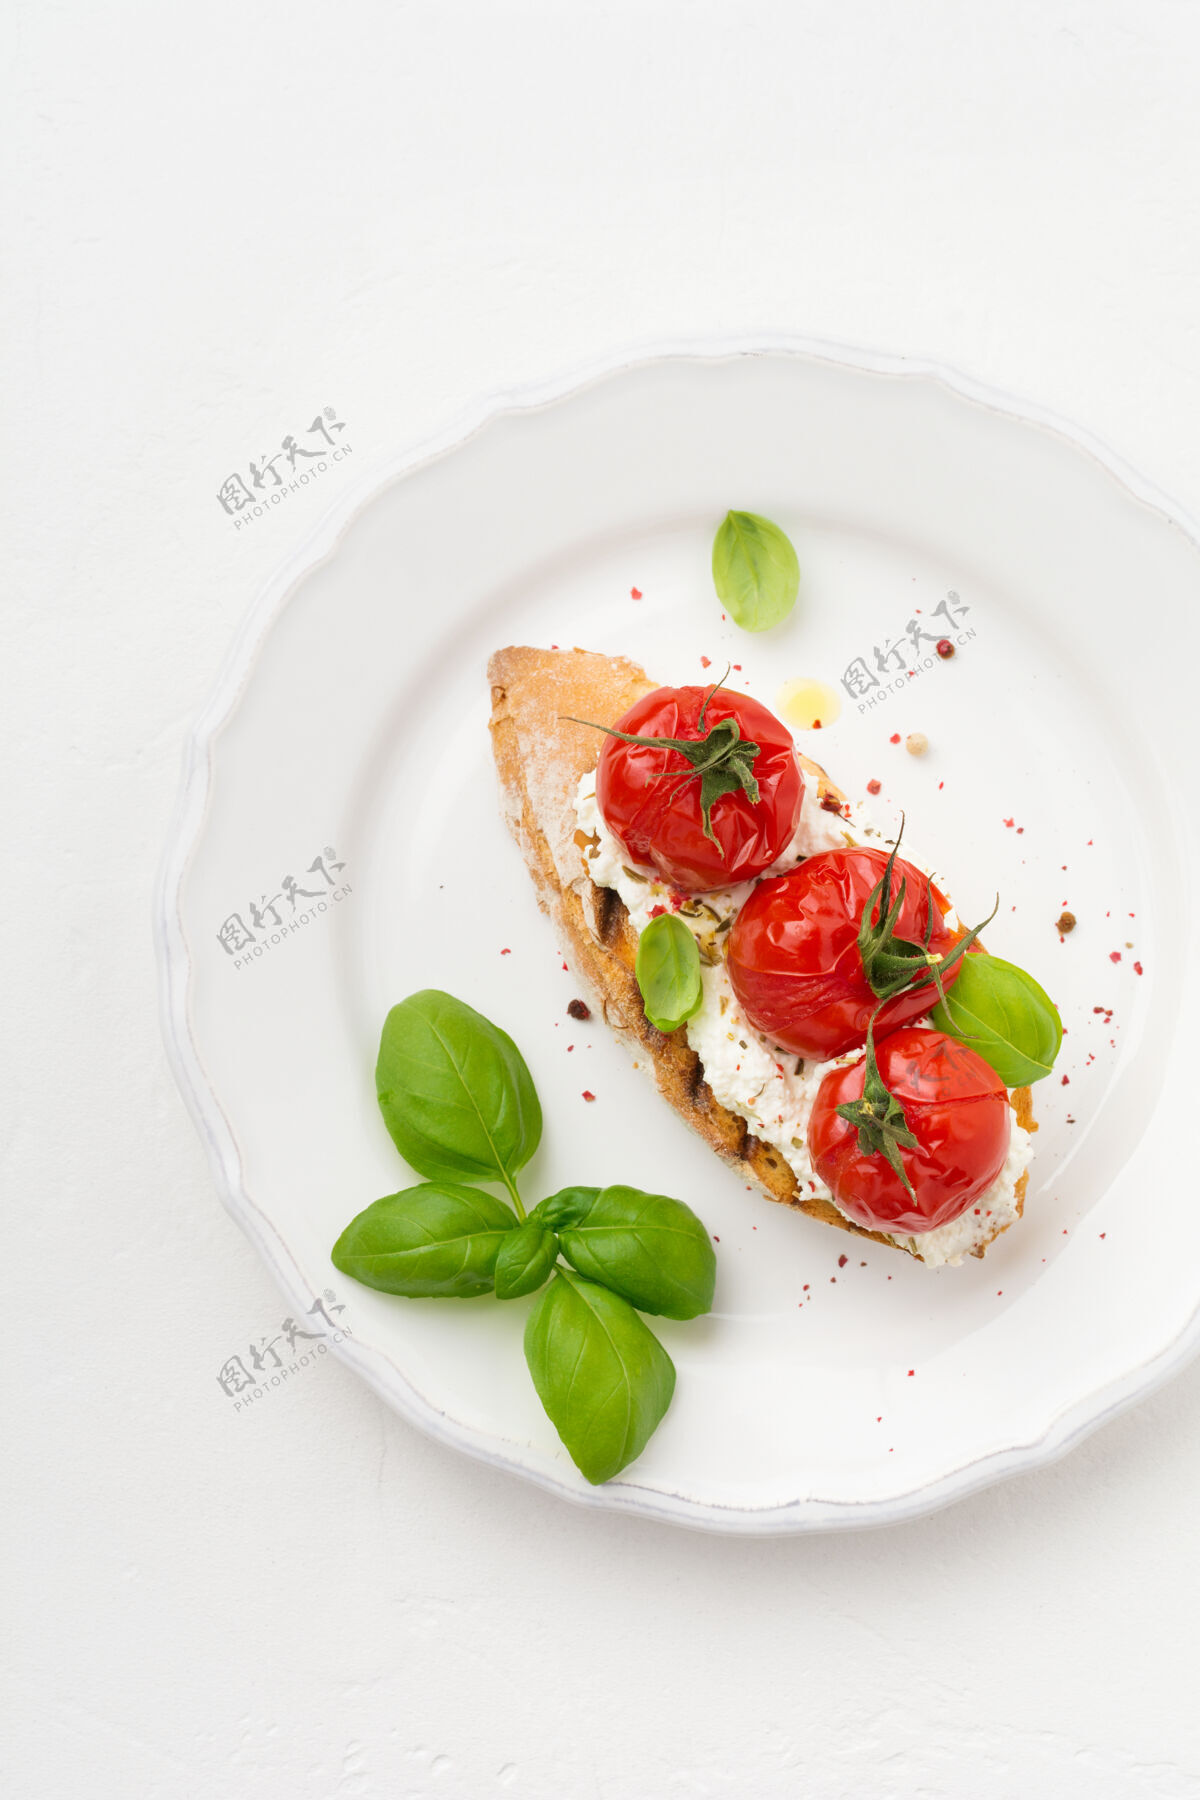 菜肴三明治上有烤樱桃西红柿 大蒜 橄榄油和凝乳奶酪早餐美味陶瓷